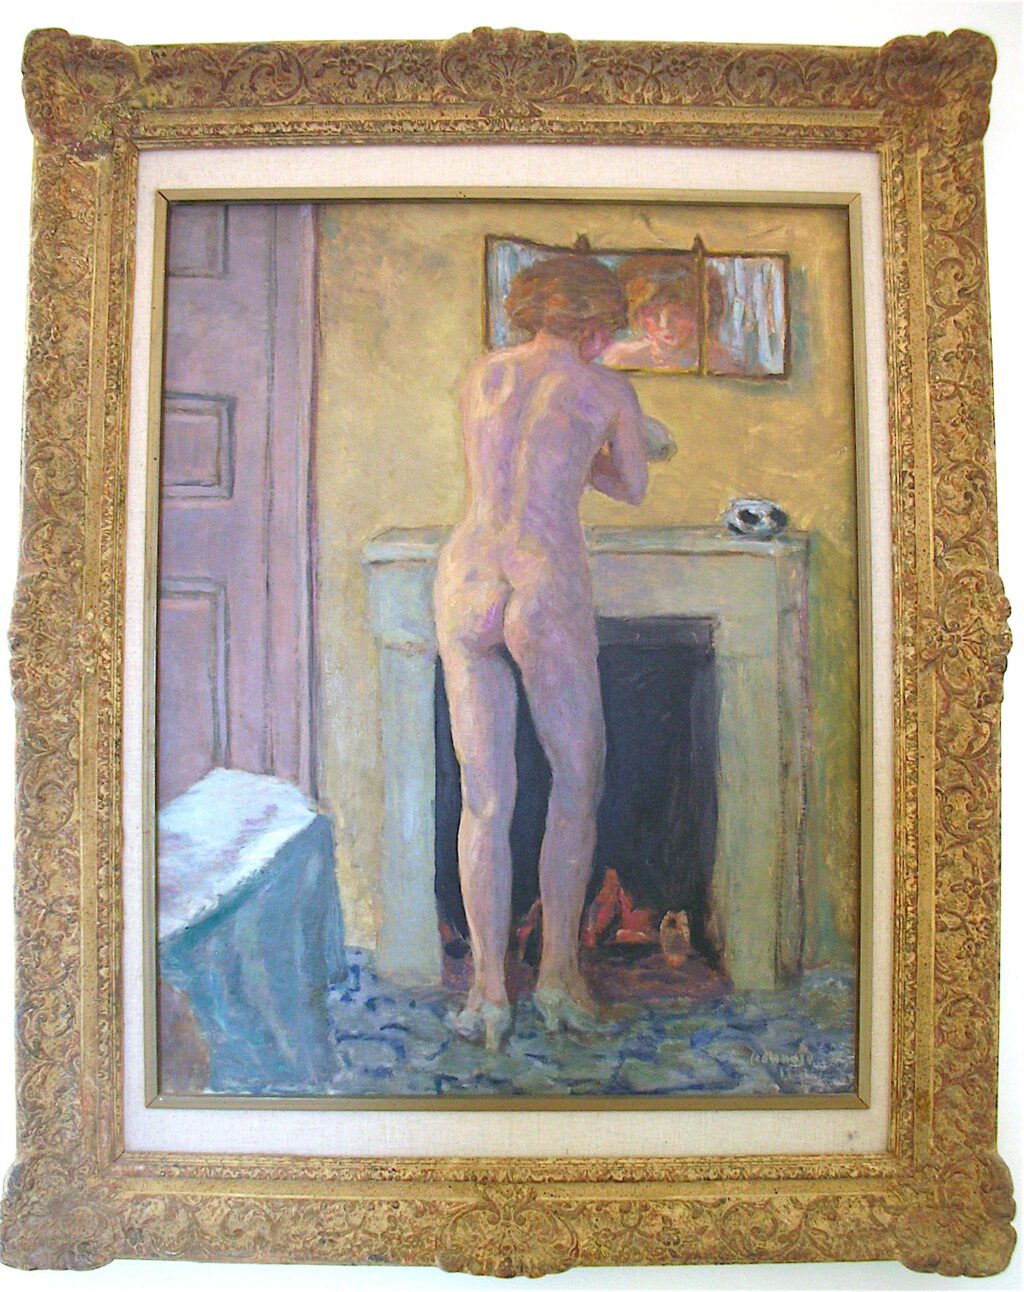 ピエール・ボナール「暖炉の前の裸」1919年、ラノンシアード美術館、サントロペ